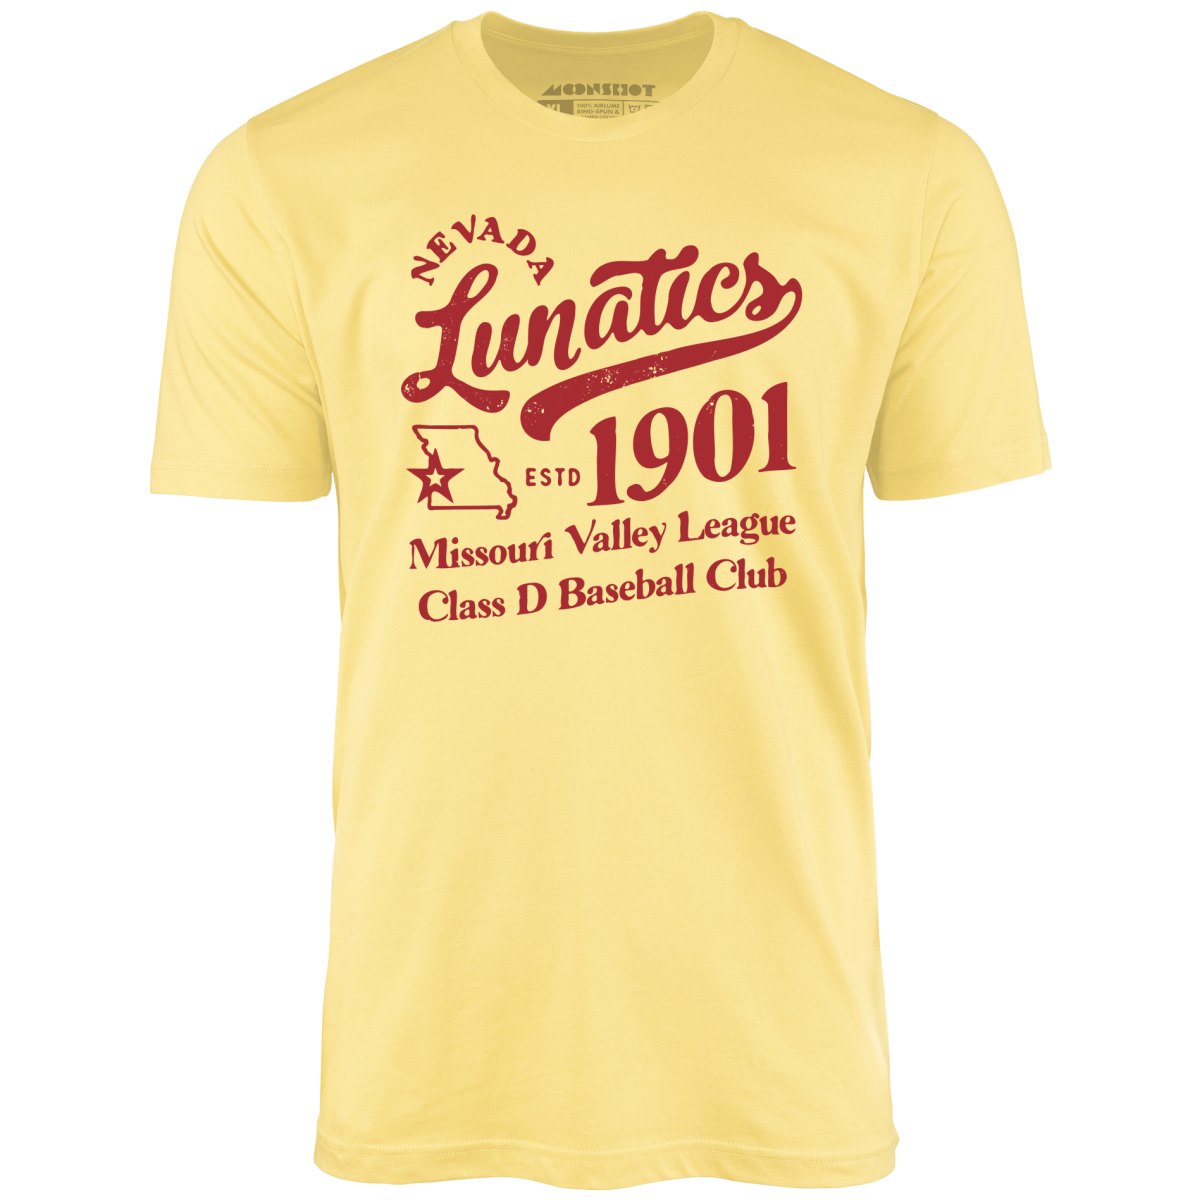 Nevada Lunatics - Missouri - Vintage Defunct Baseball Teams - Unisex T-Shirt